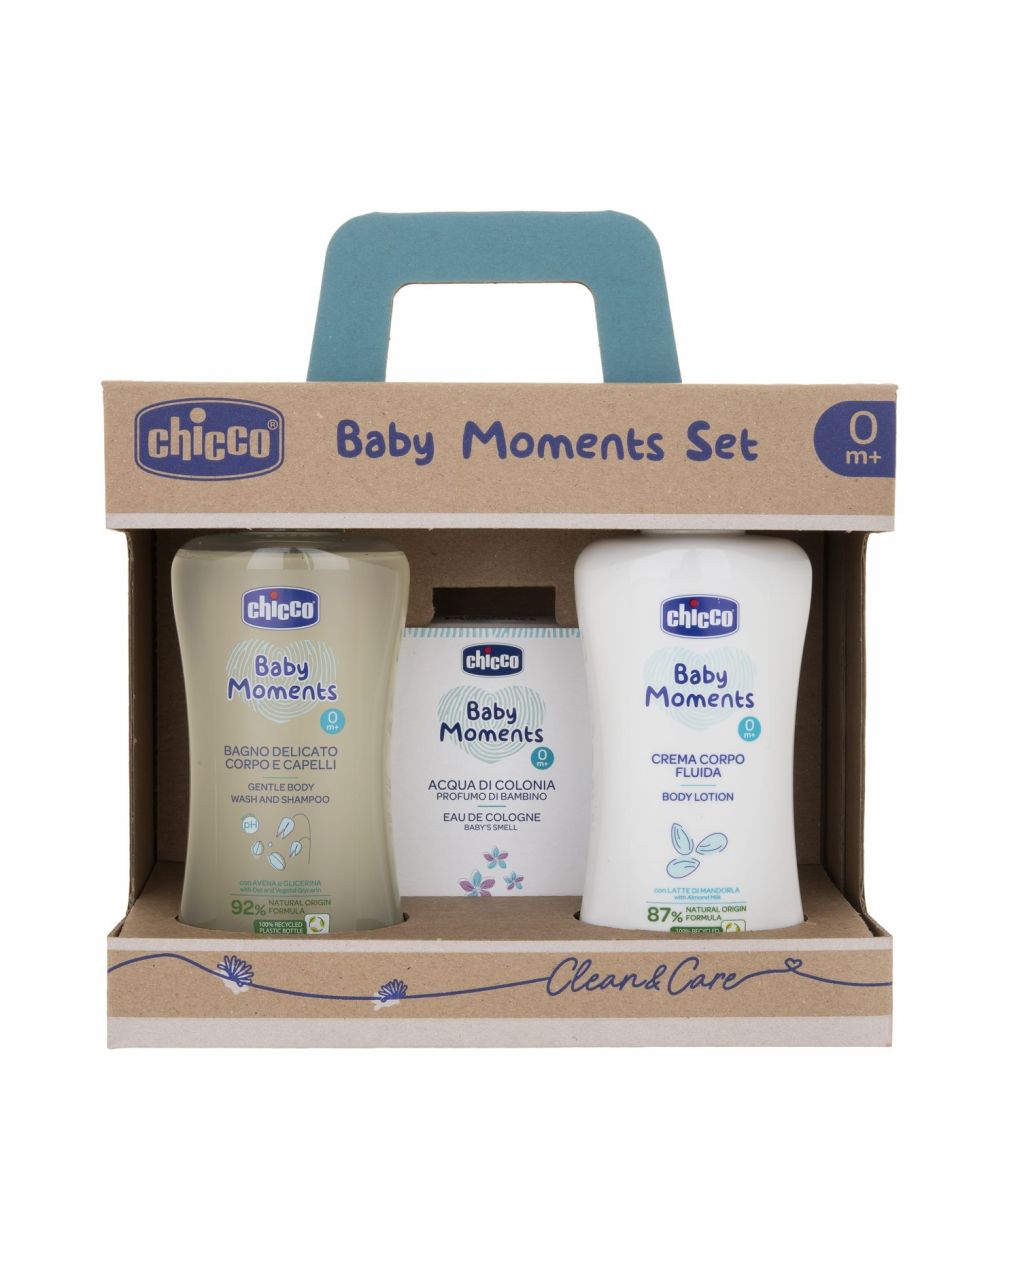 Baby moments set 3 bagno corpo/capelli crema corpo e colonia - chicco - Chicco